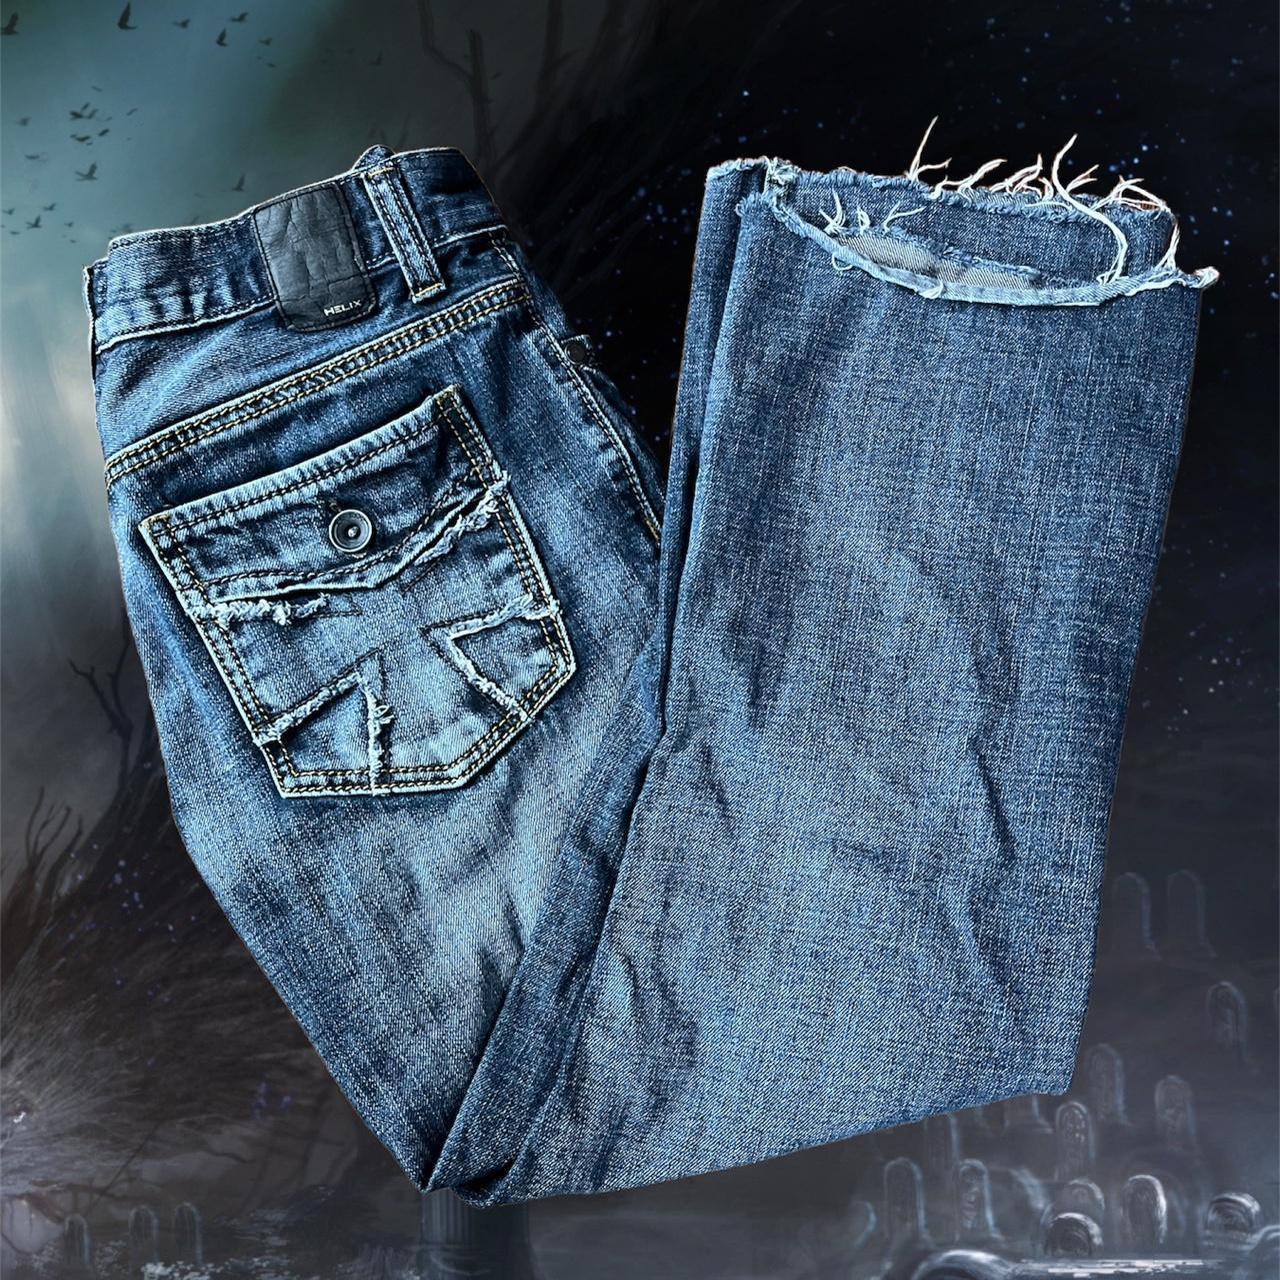 HELIX Cross Relaxed Bootcut Jeans 30x29 super tuff... - Depop